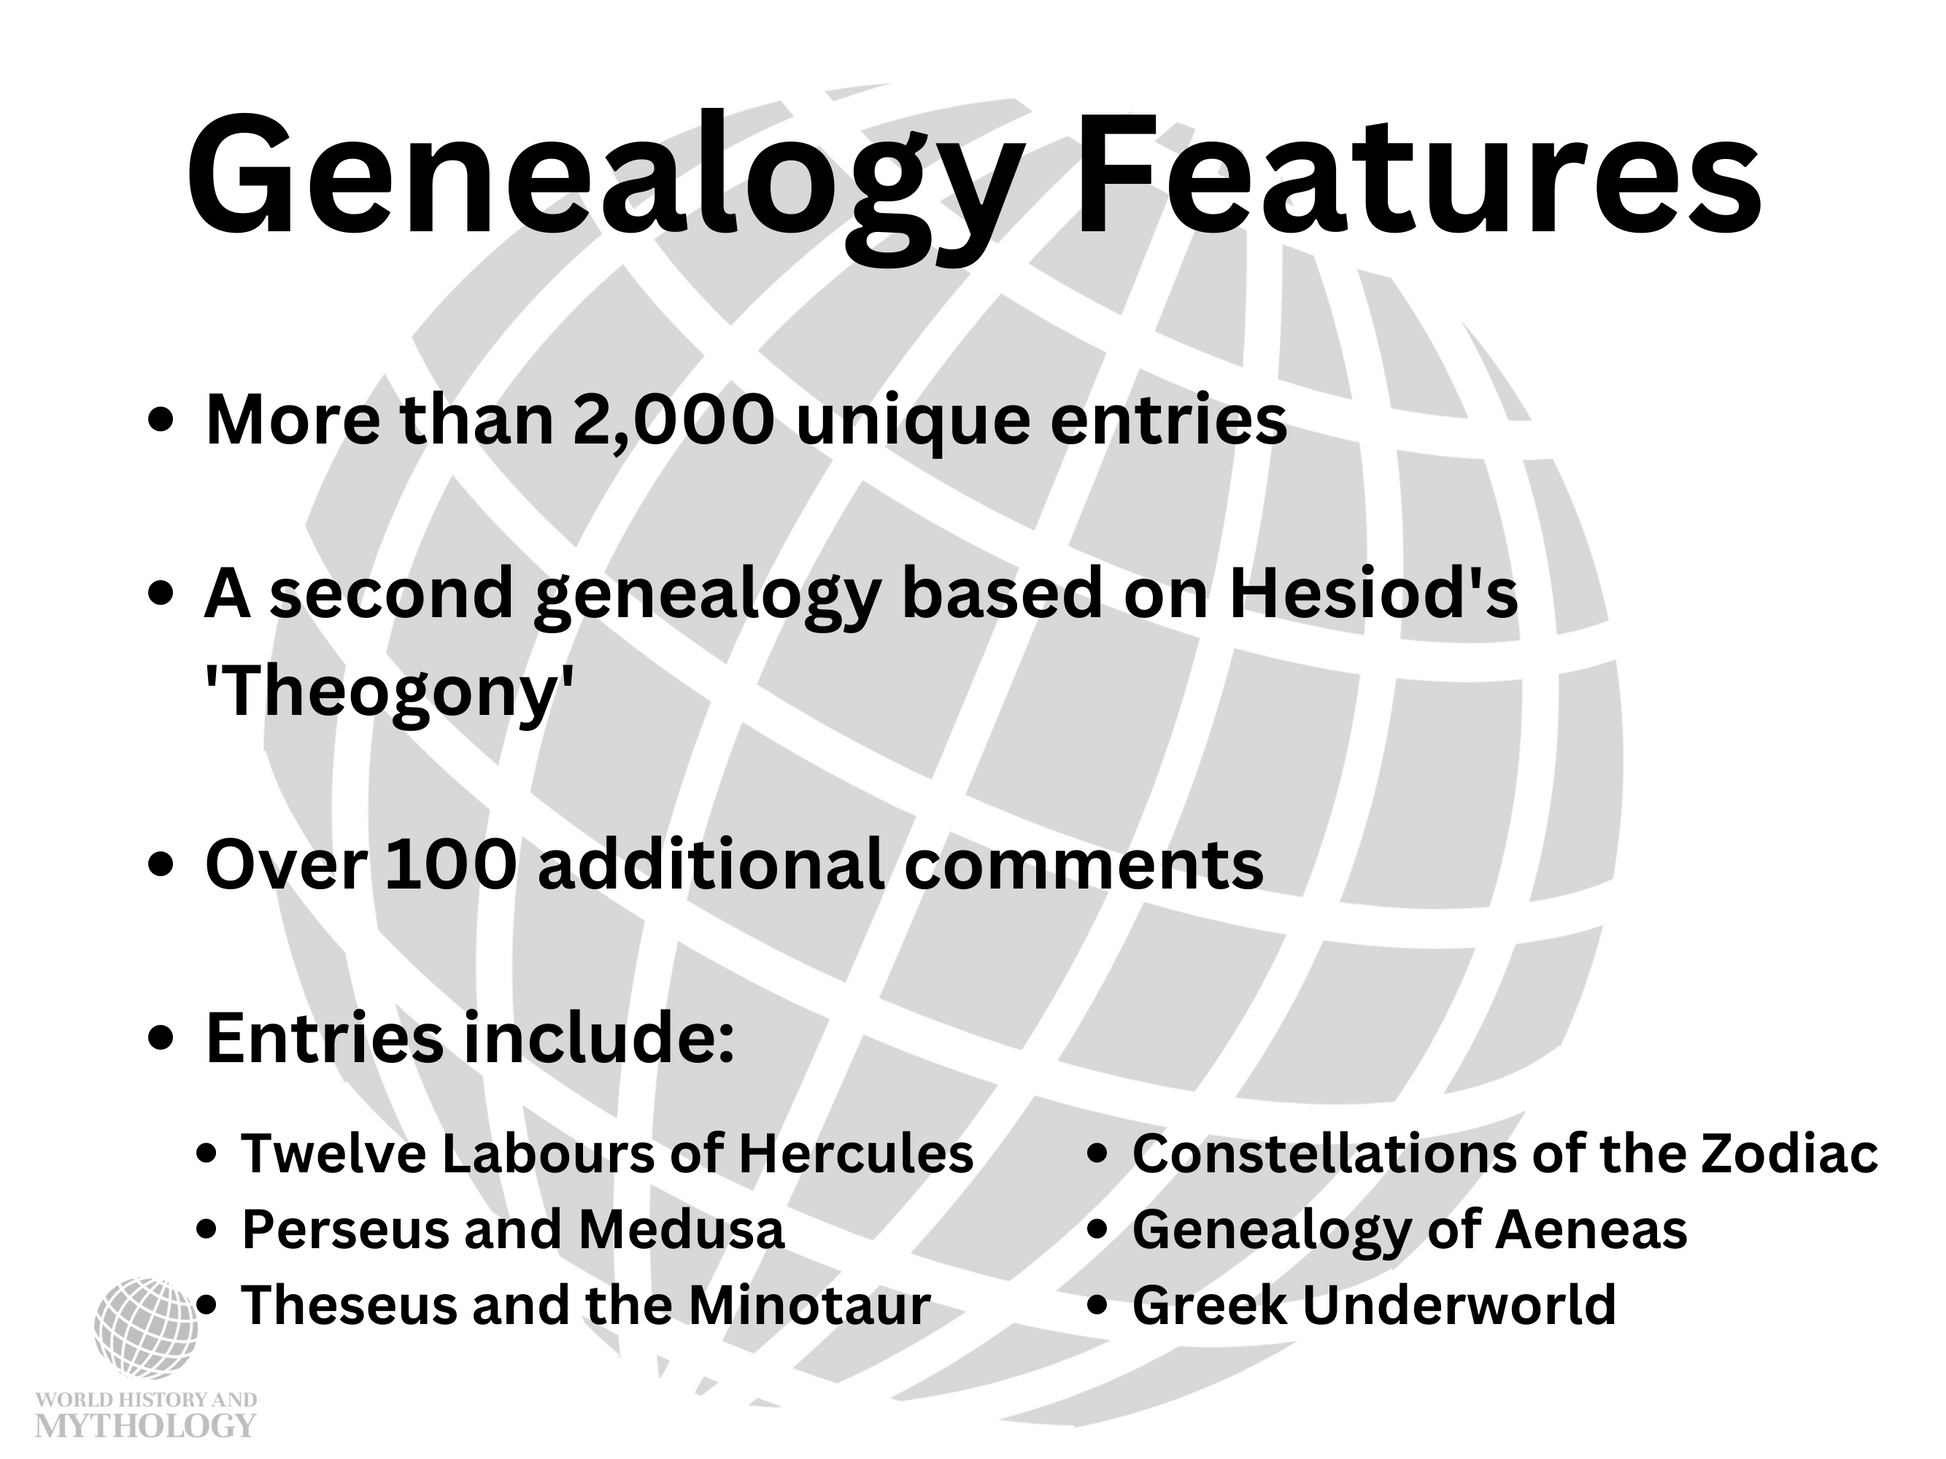 theseus greek mythology family tree